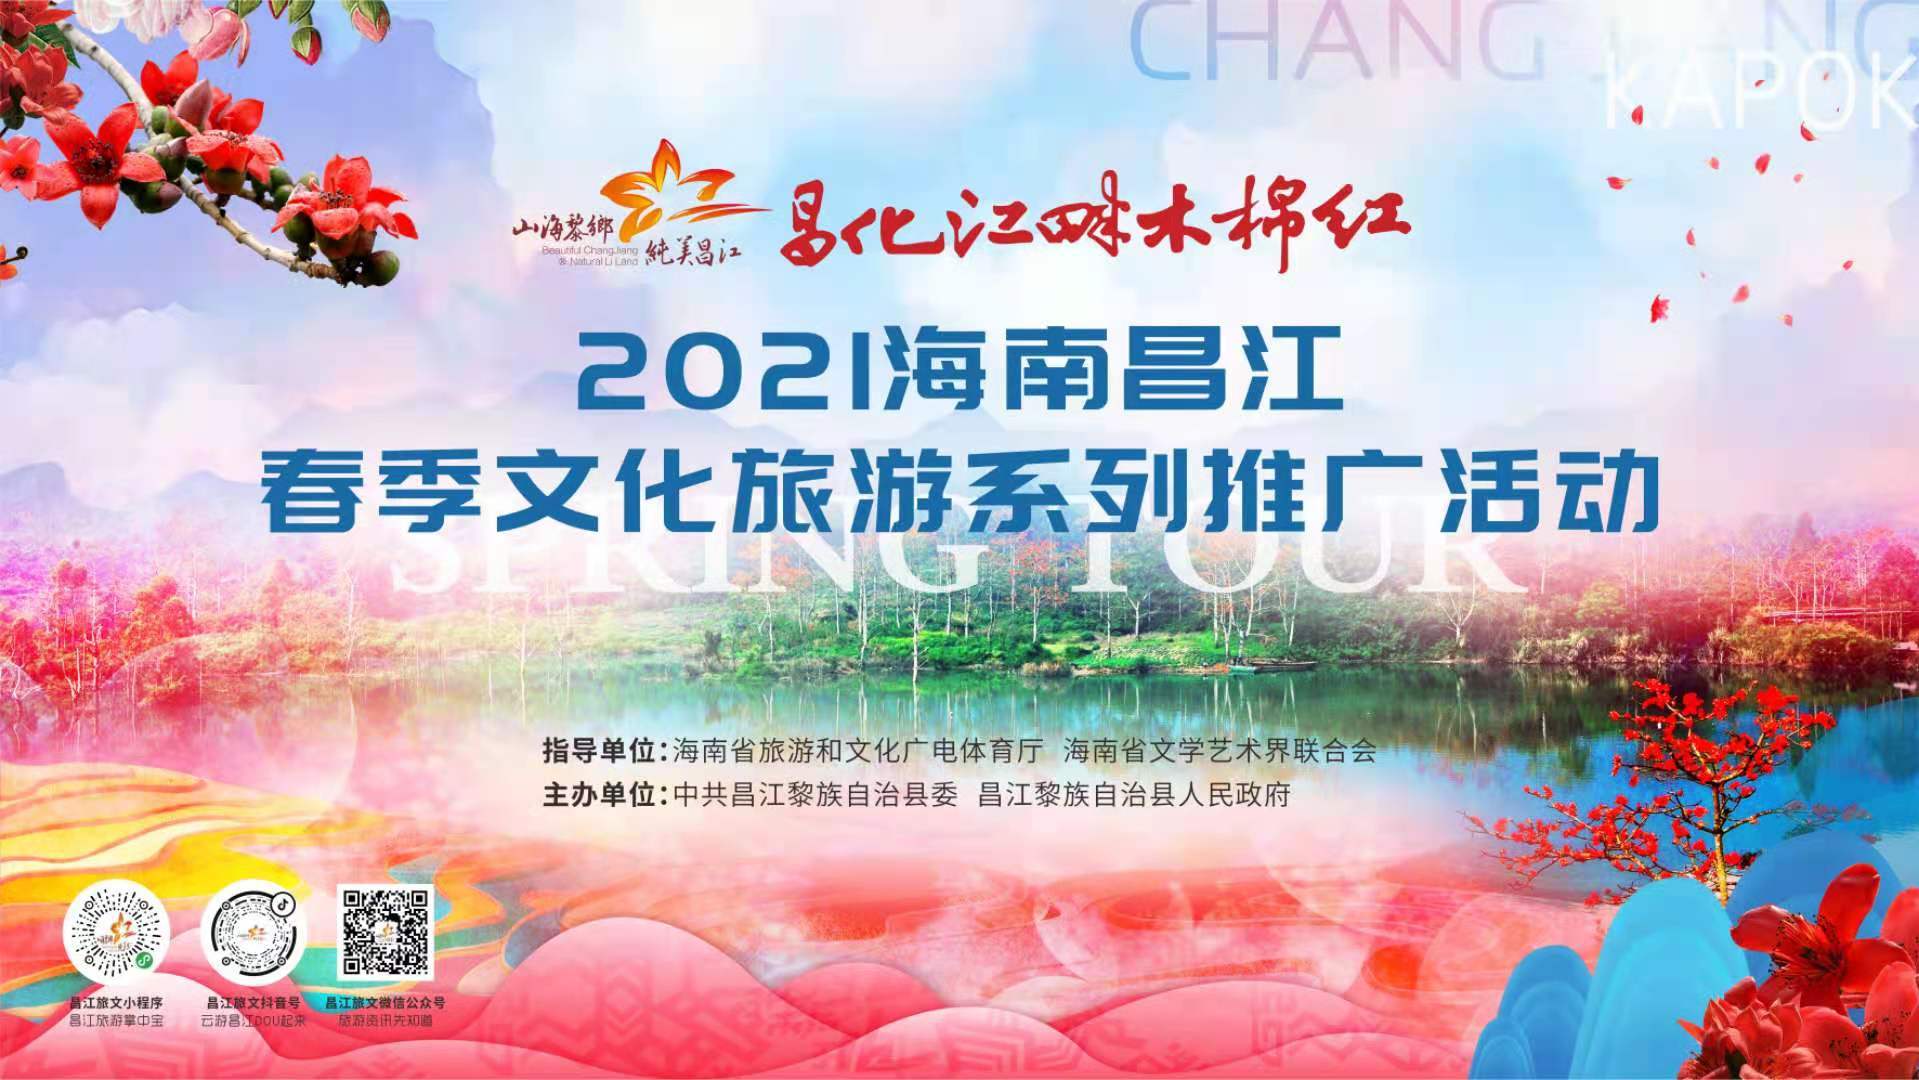 赏花放歌“唱”游昌江！“2021年海南昌江春季文化旅游系列推广活动”精彩继续